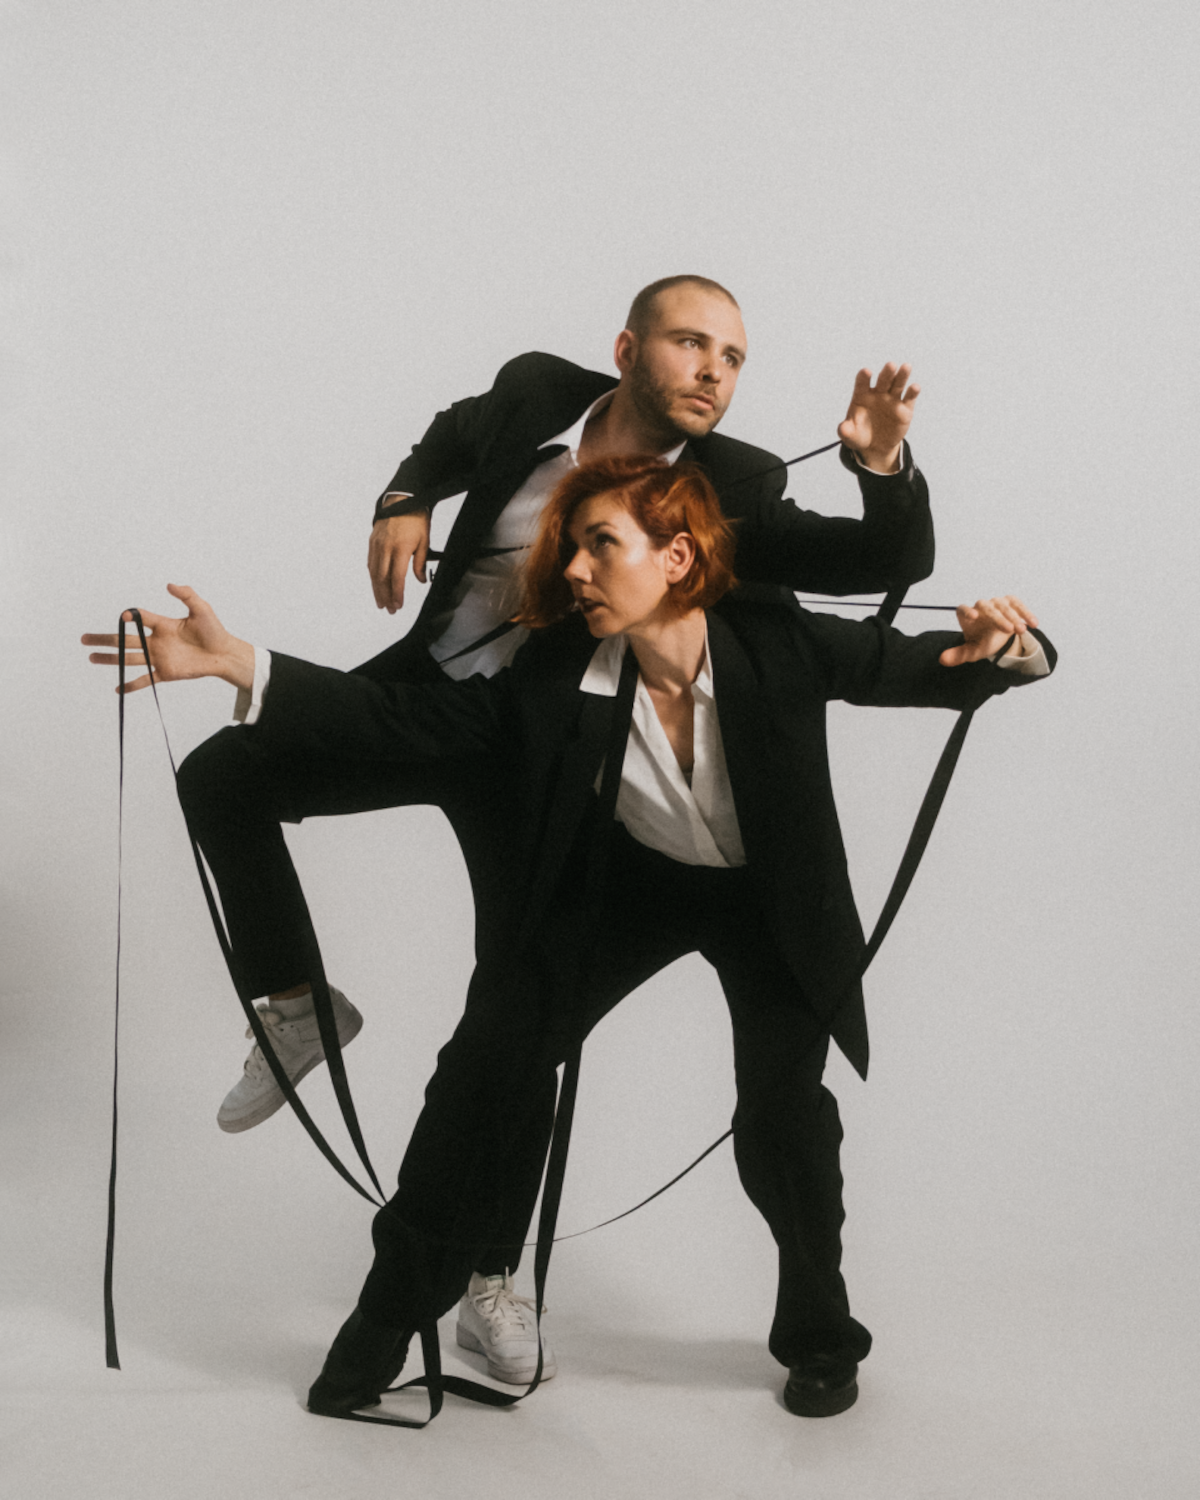 Frau und Mann posieren im schwarzen Anzug vor einem weißen Hintergrund